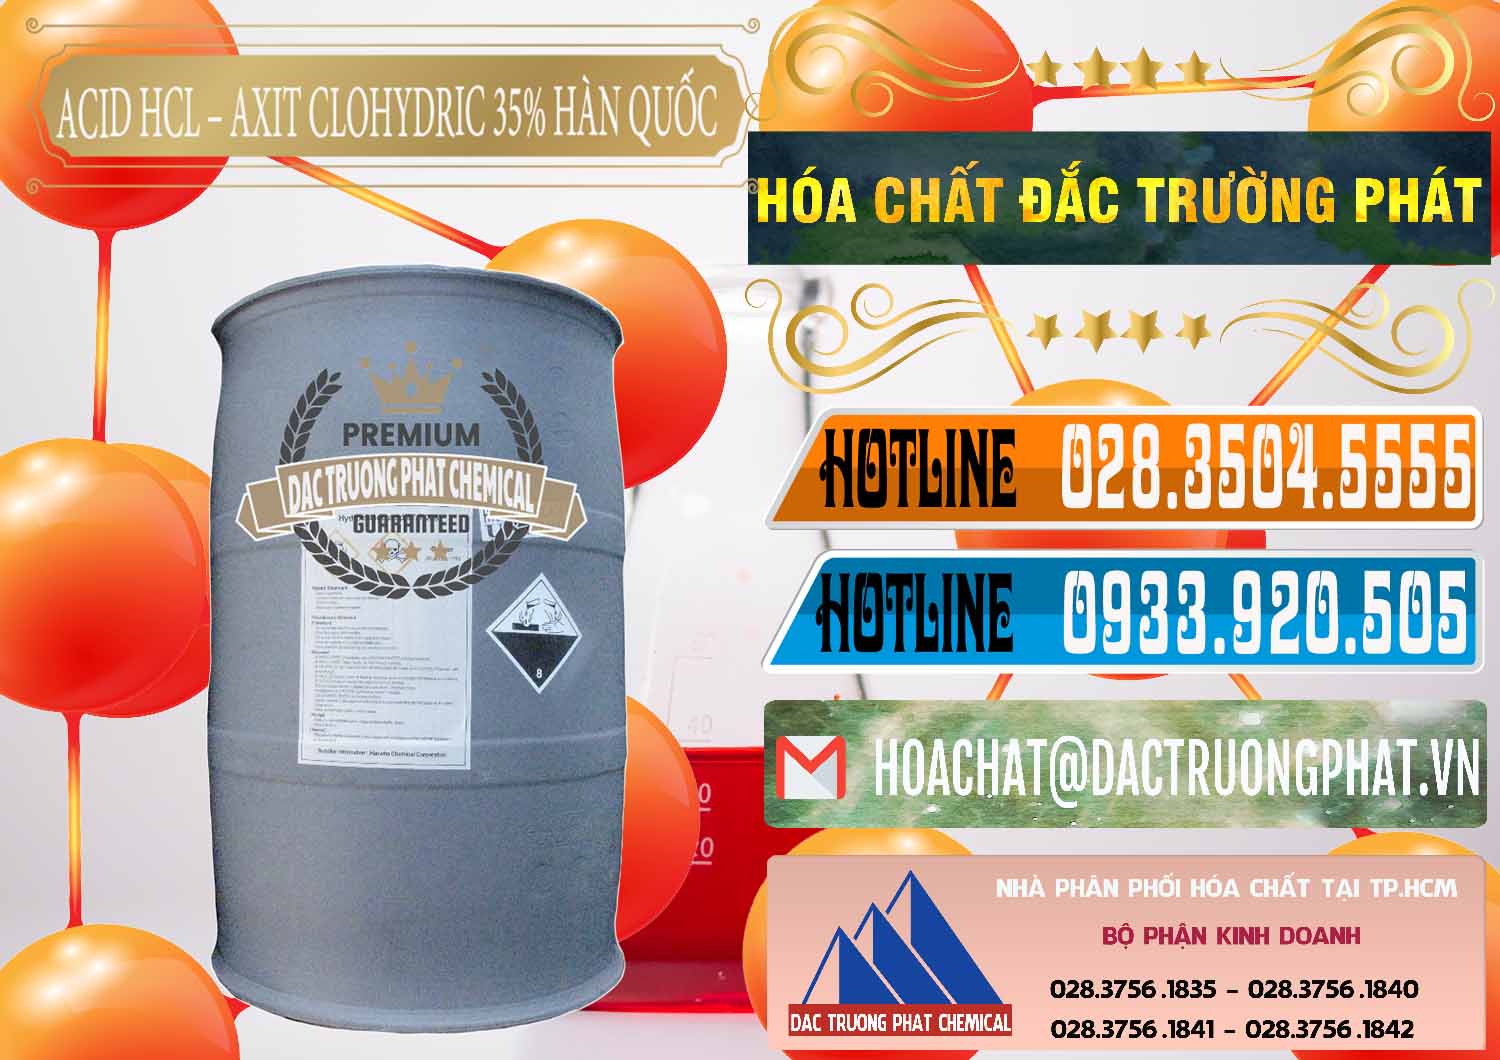 Nơi chuyên nhập khẩu & bán Acid HCL - Axit Cohidric 35% Hàn Quốc Korea - 0011 - Công ty chuyên kinh doanh và phân phối hóa chất tại TP.HCM - stmp.net